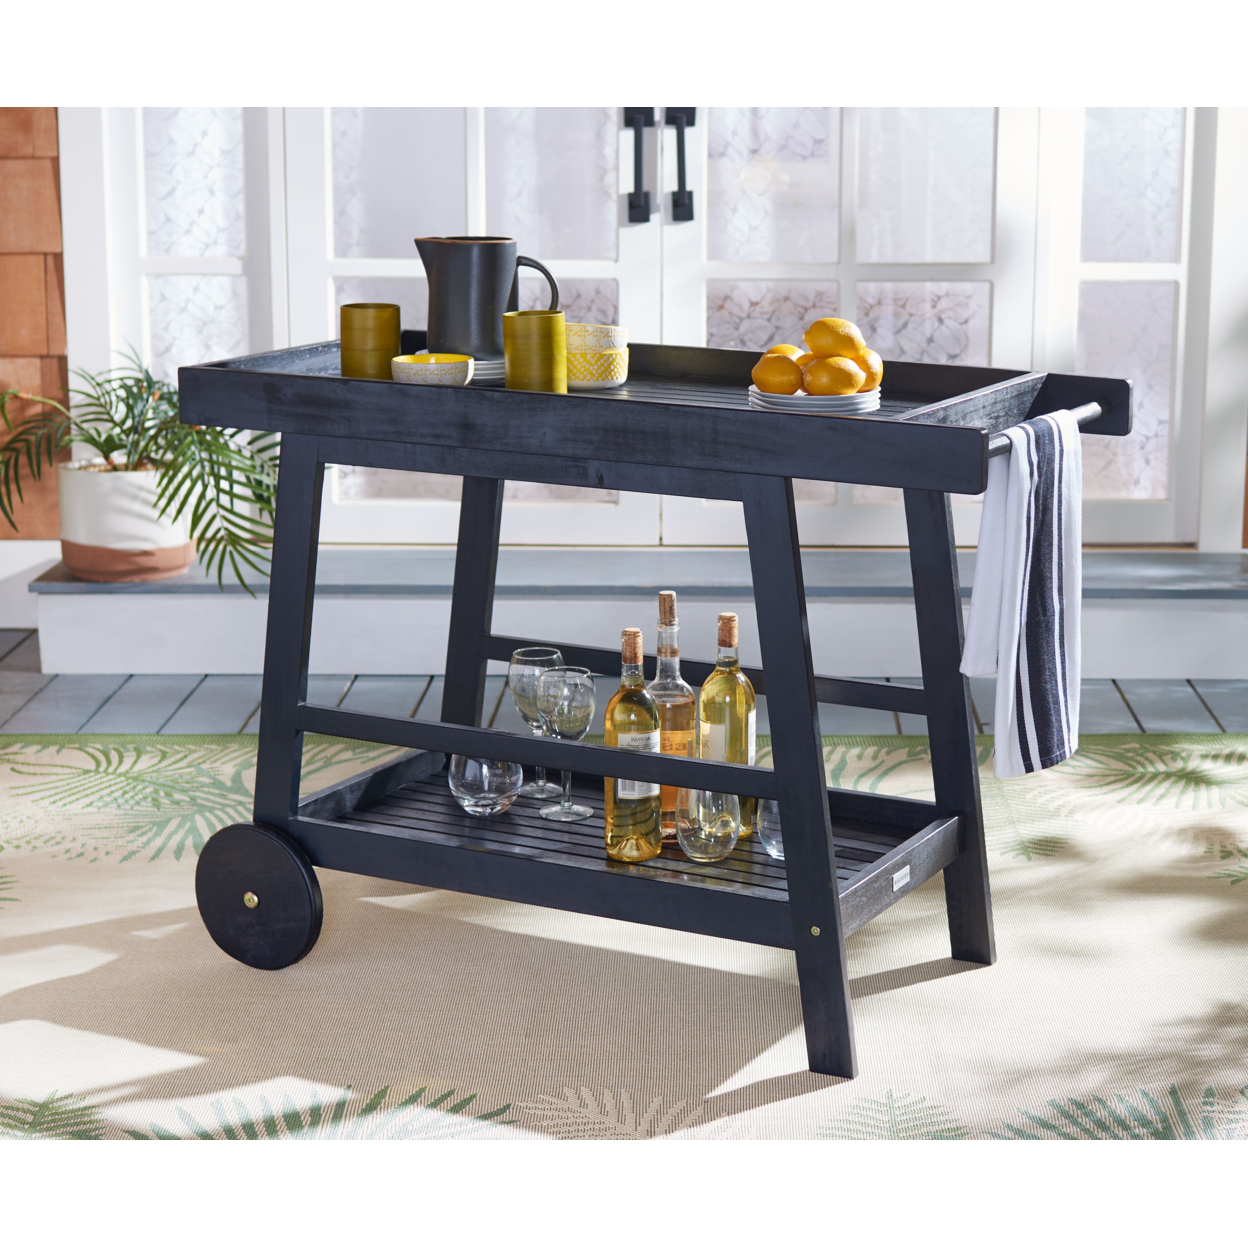 SAFAVIEH Outdoor Collection Renzo Indoor/Outdoor Bar Cart Black